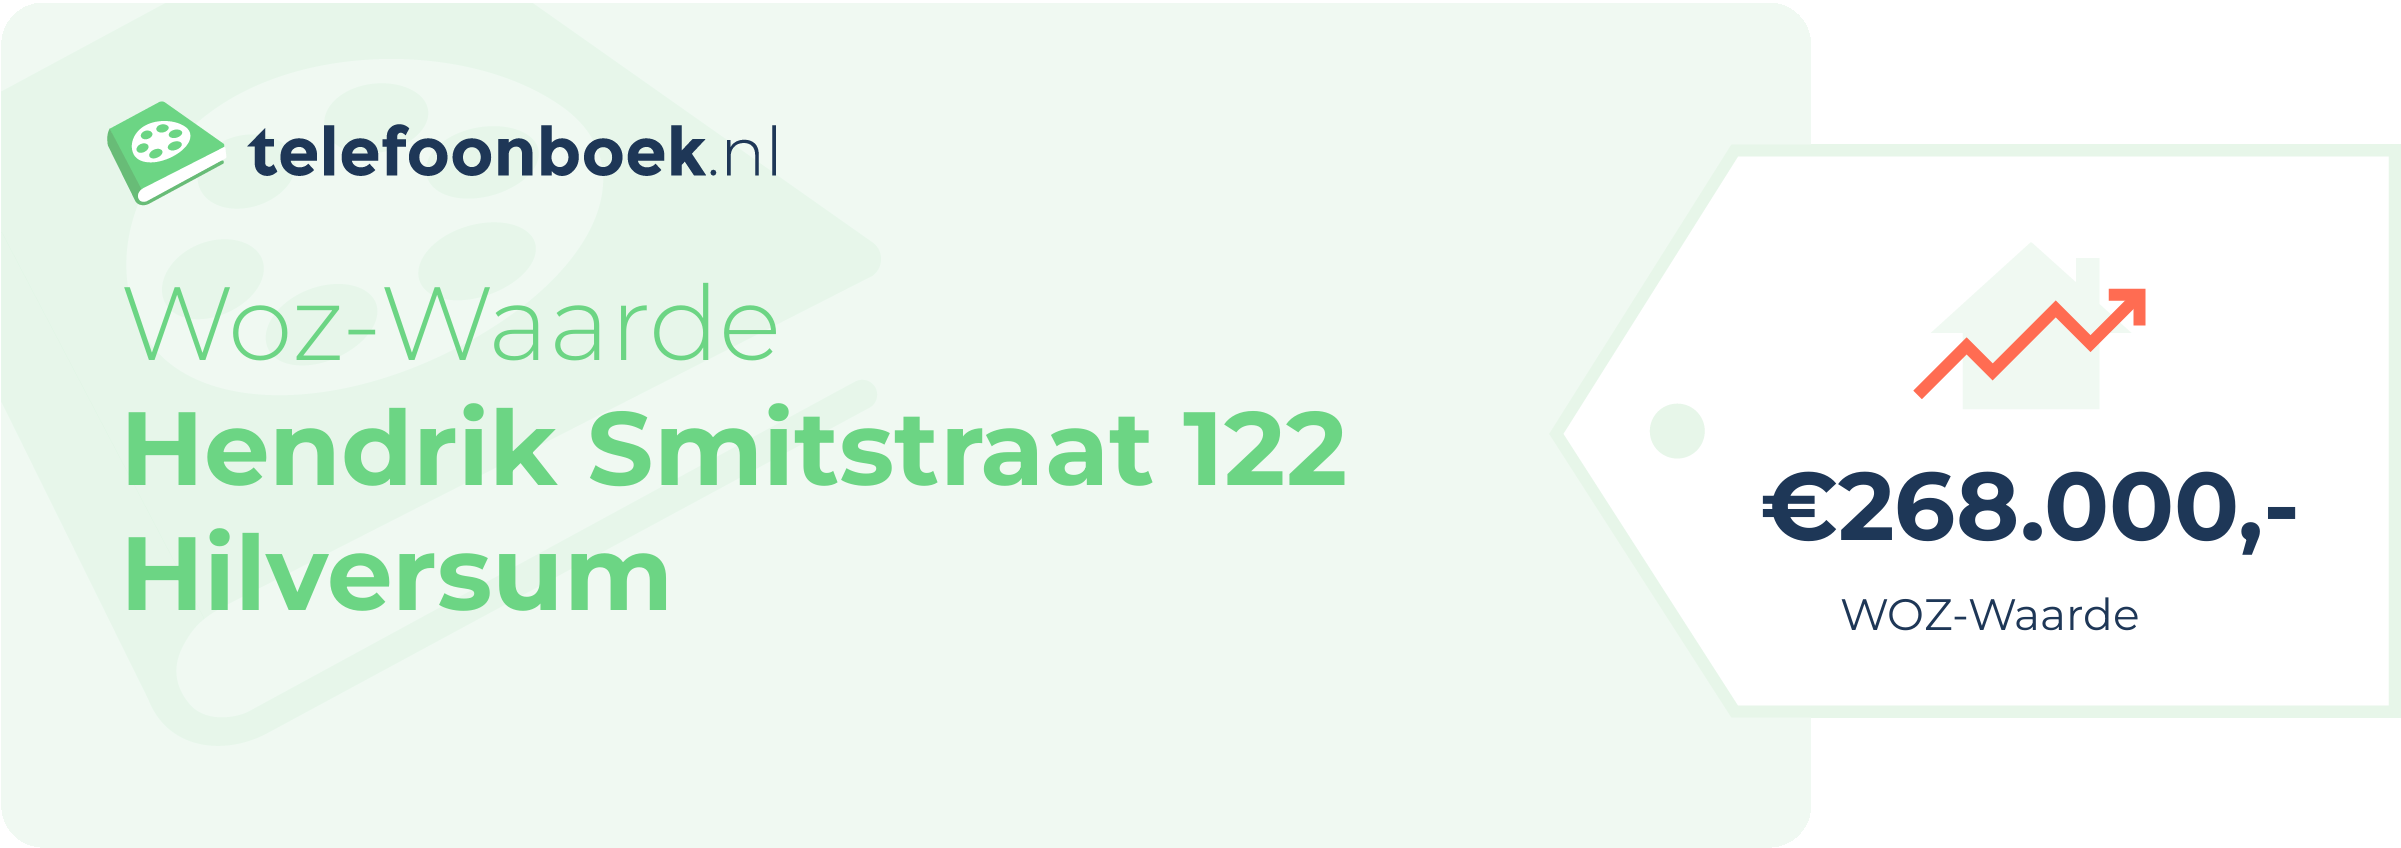 WOZ-waarde Hendrik Smitstraat 122 Hilversum